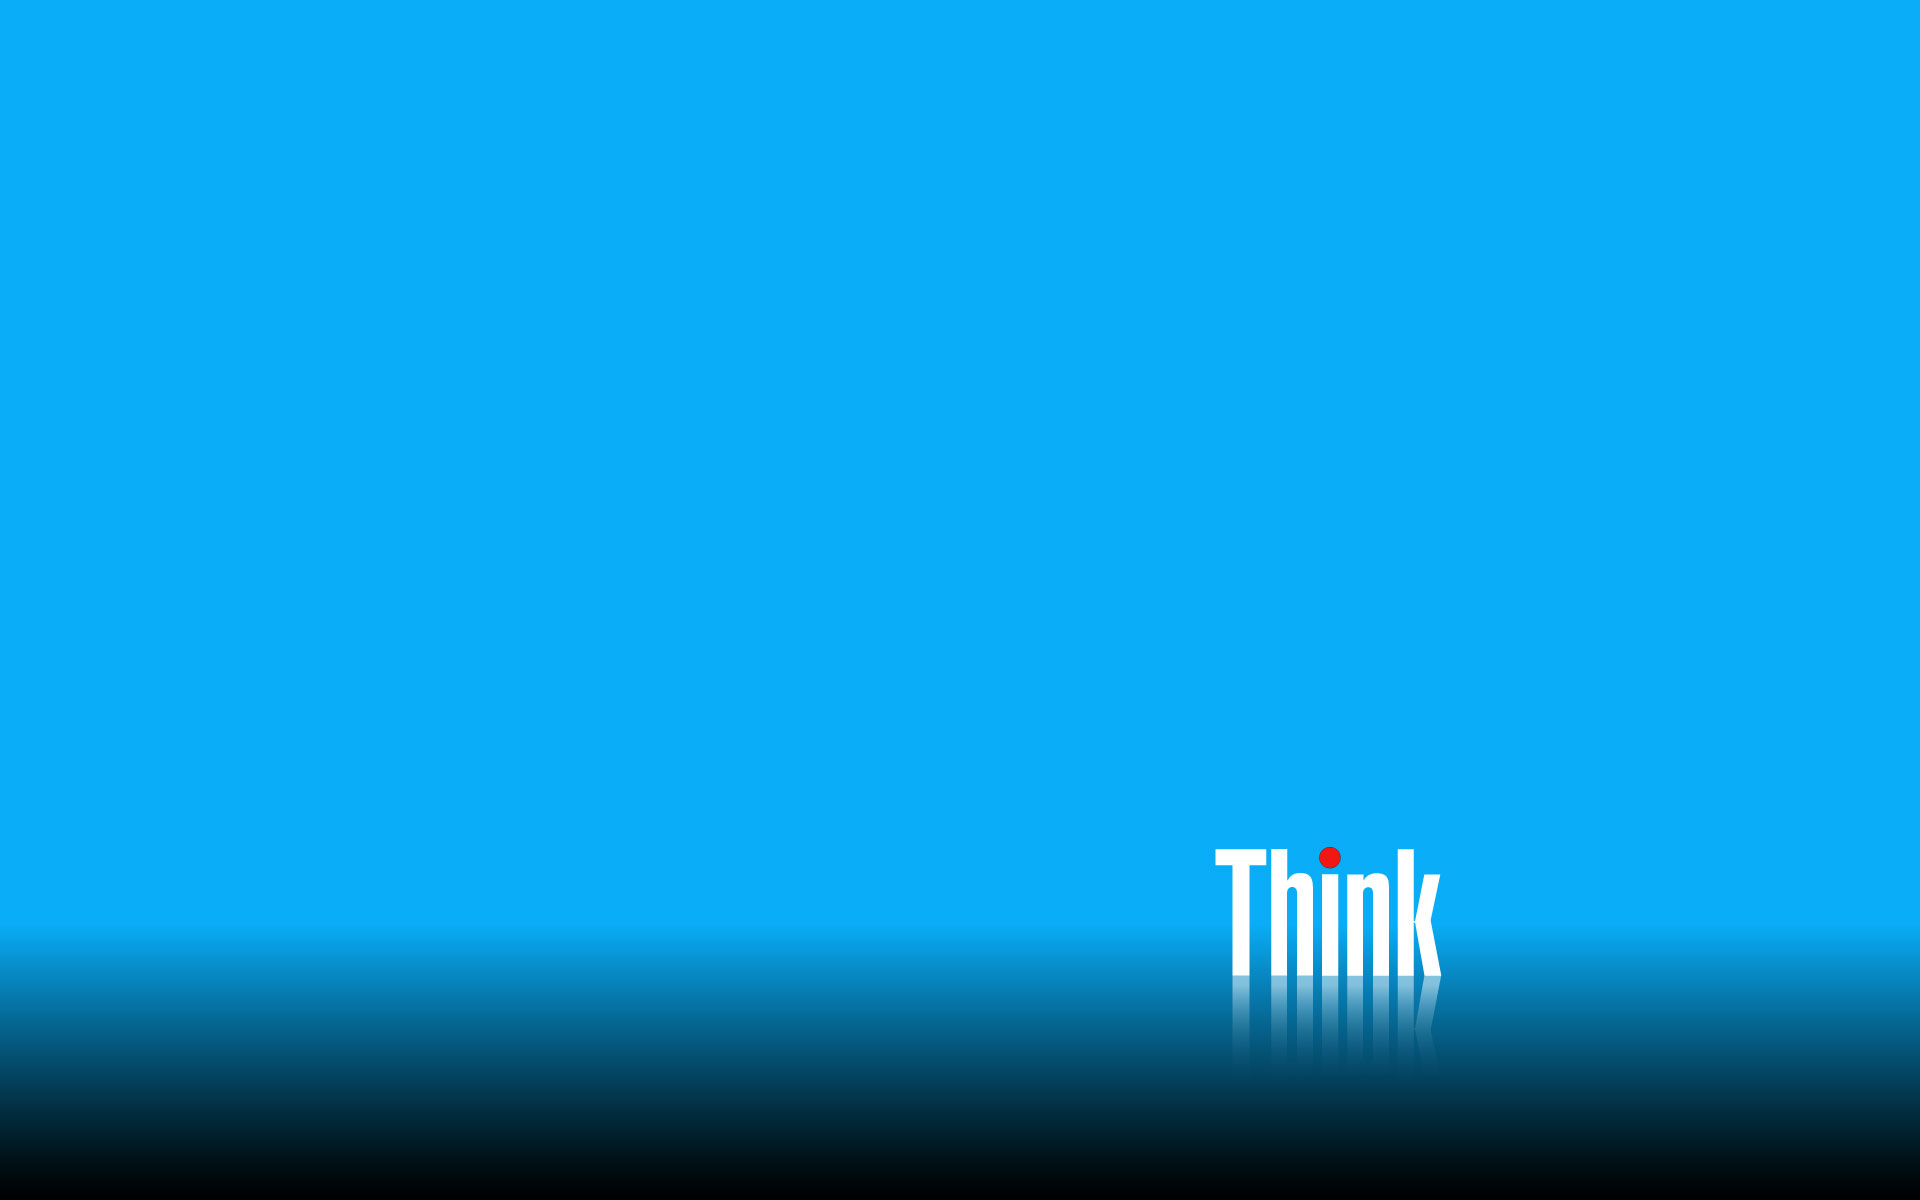 Thinkpad 桌面 - HD Wallpaper 